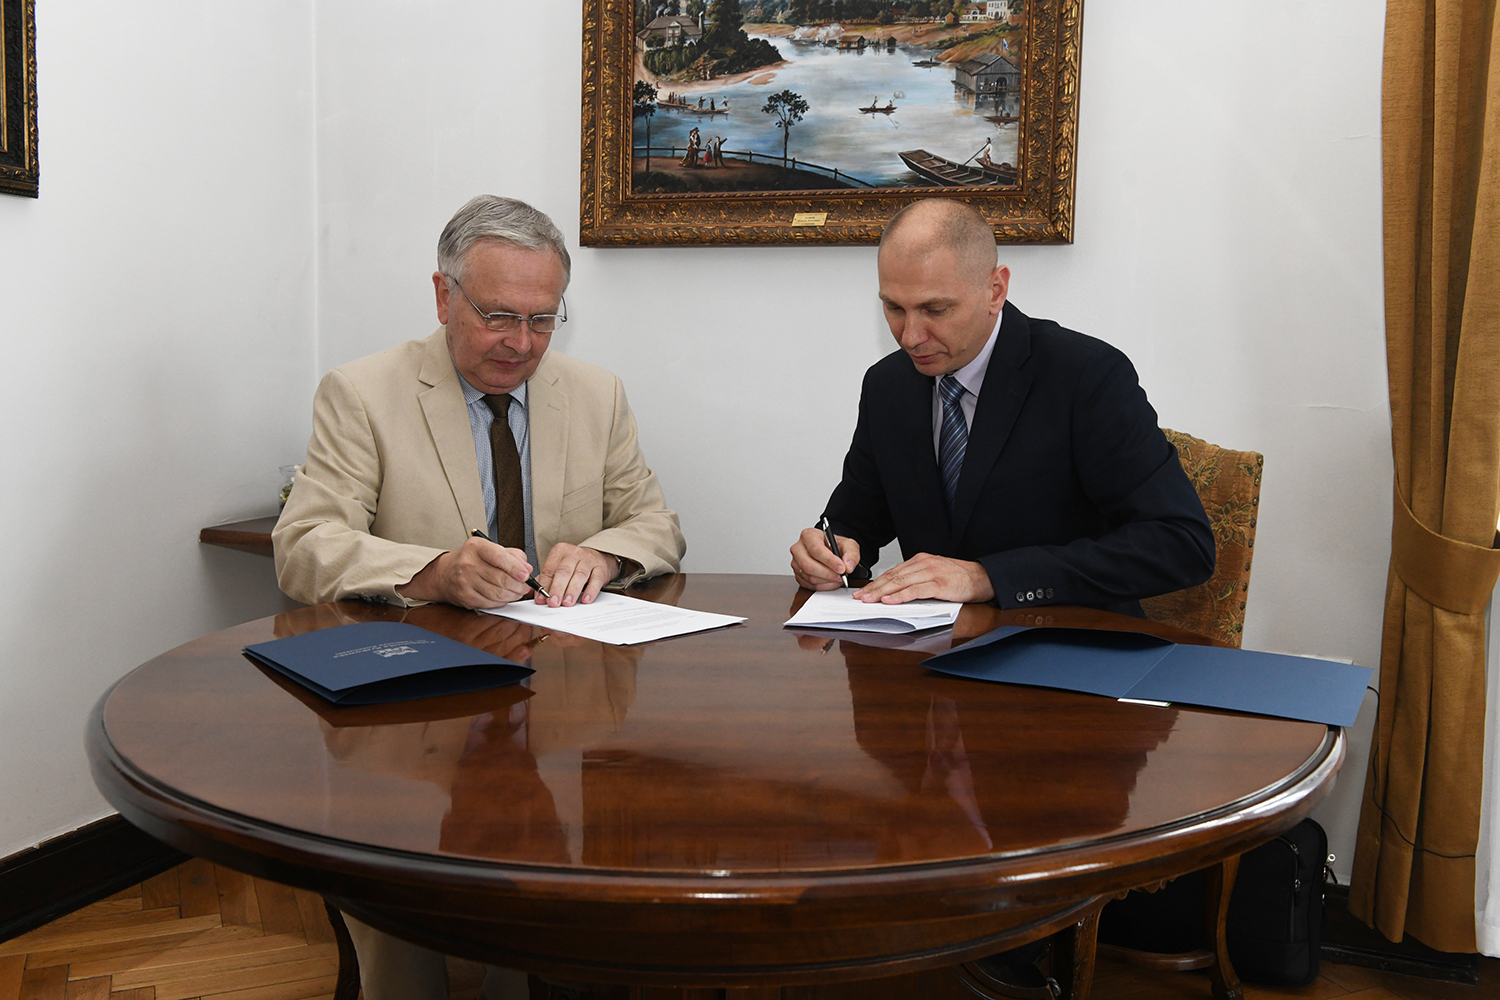 Przy stole siedzą dwaj mężczyźni. Jednym z nich jest rektor Politechniki Krakowskiej, a drugim Sebastian Talarczyk, członek Zarządu FAKRO. Panowie podpisują dokumenty.